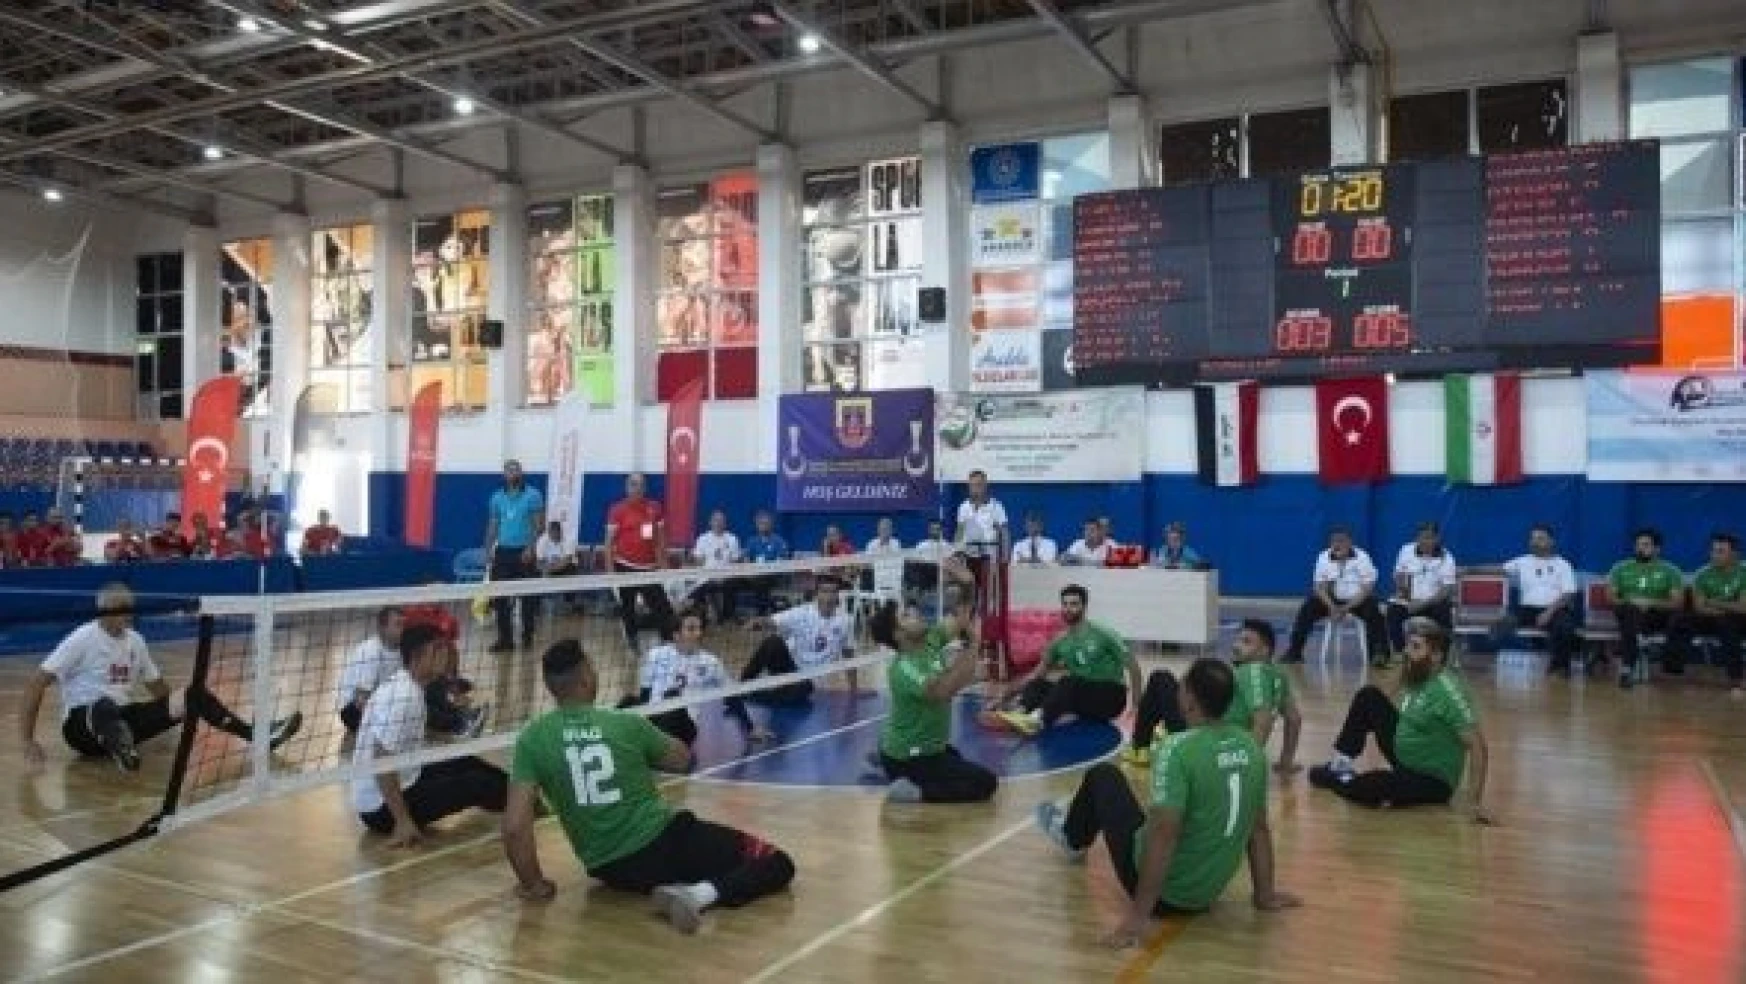 Tunceli'de 'Oturarak Voleybol Uluslararası 1. Munzur Turnuvası' başladı